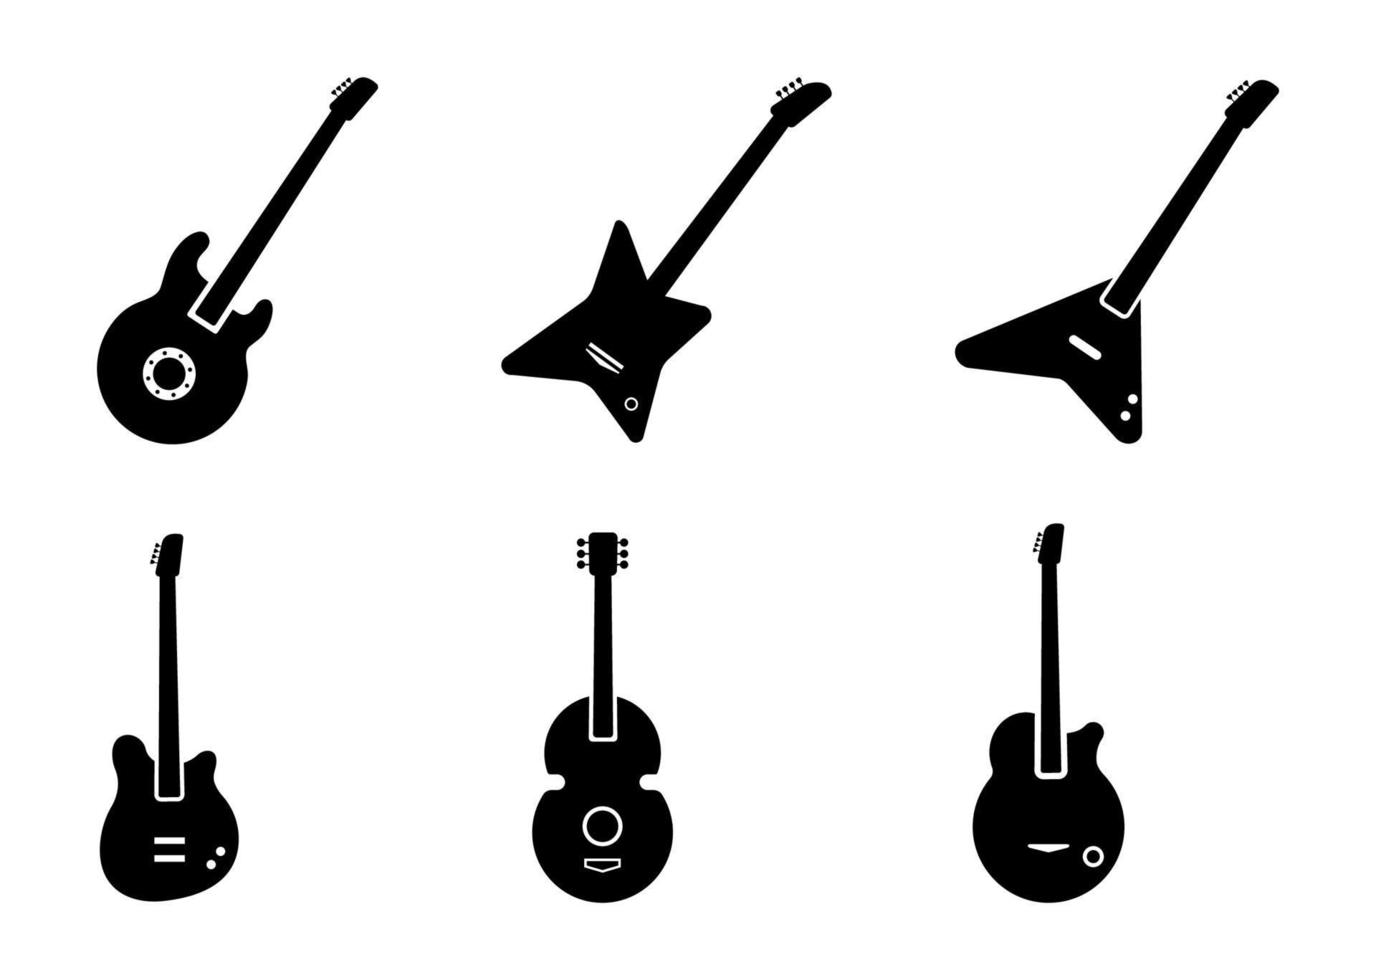 gitarr ikonuppsättning - vektor illustration.